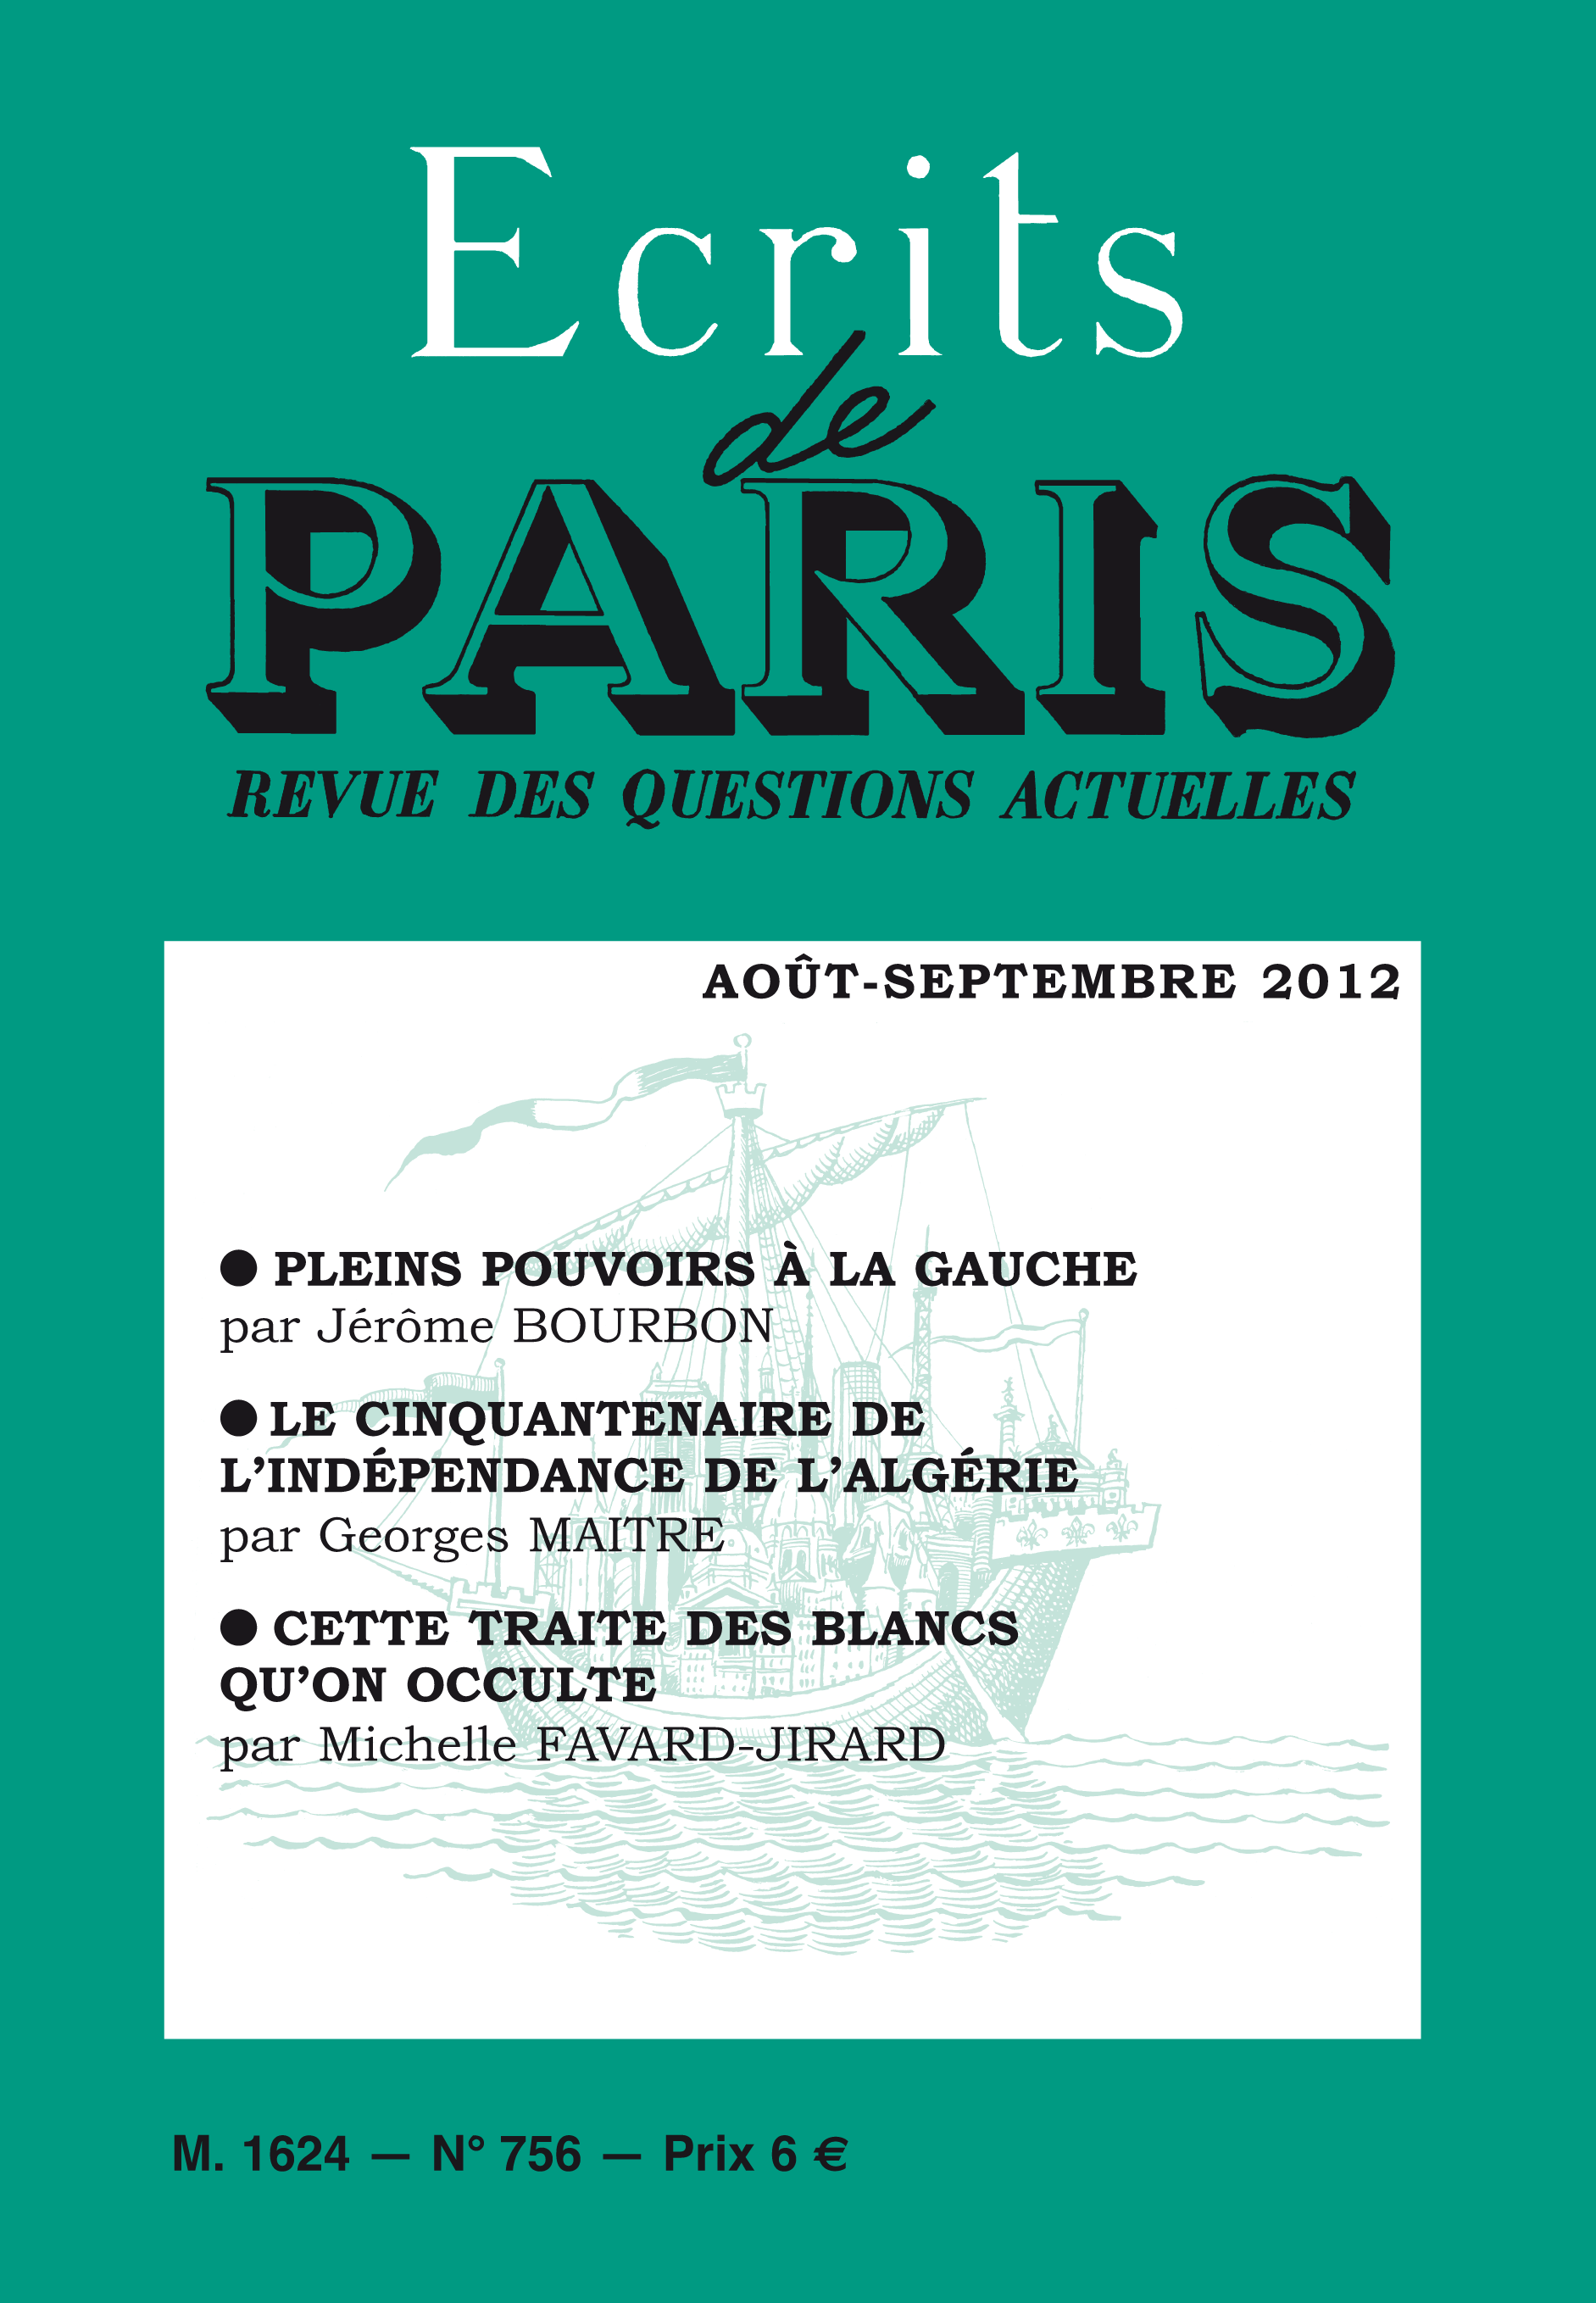 août-septembre 2012 (PDF) version numérique 